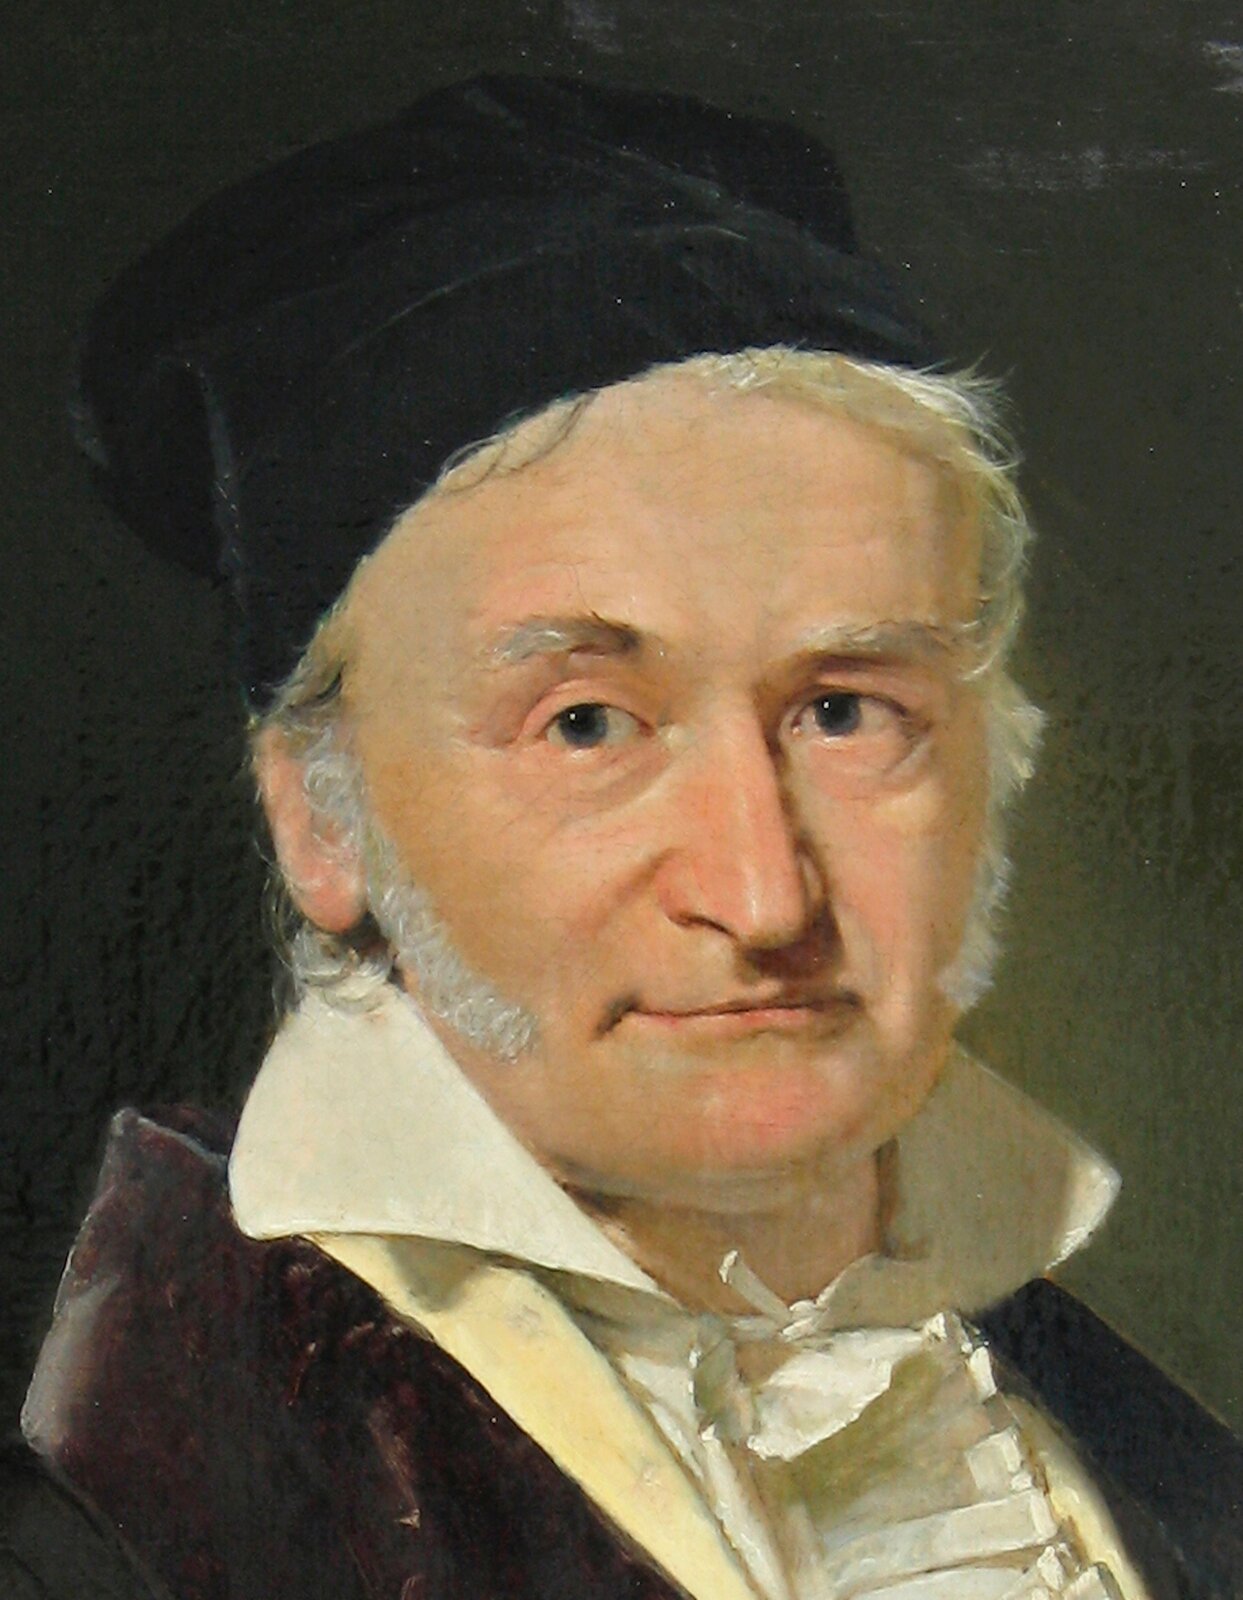 Rys. a. Rysunek przedstawia malowany farbami portret Carla Friedricha Gaussa. Jest to starszy mężczyzna o zaokrąglonej twarzy i wysokim czole. Ma długie bokobrody, które sięgają mu blisko ust. Mężczyzna lekko się uśmiecha. Na głowie ma założoną czarną czapkę. Nosi białą koszulę, zawiązaną pod szyją, z postawionym kołnierzem, a na koszuli brązowy surdut.